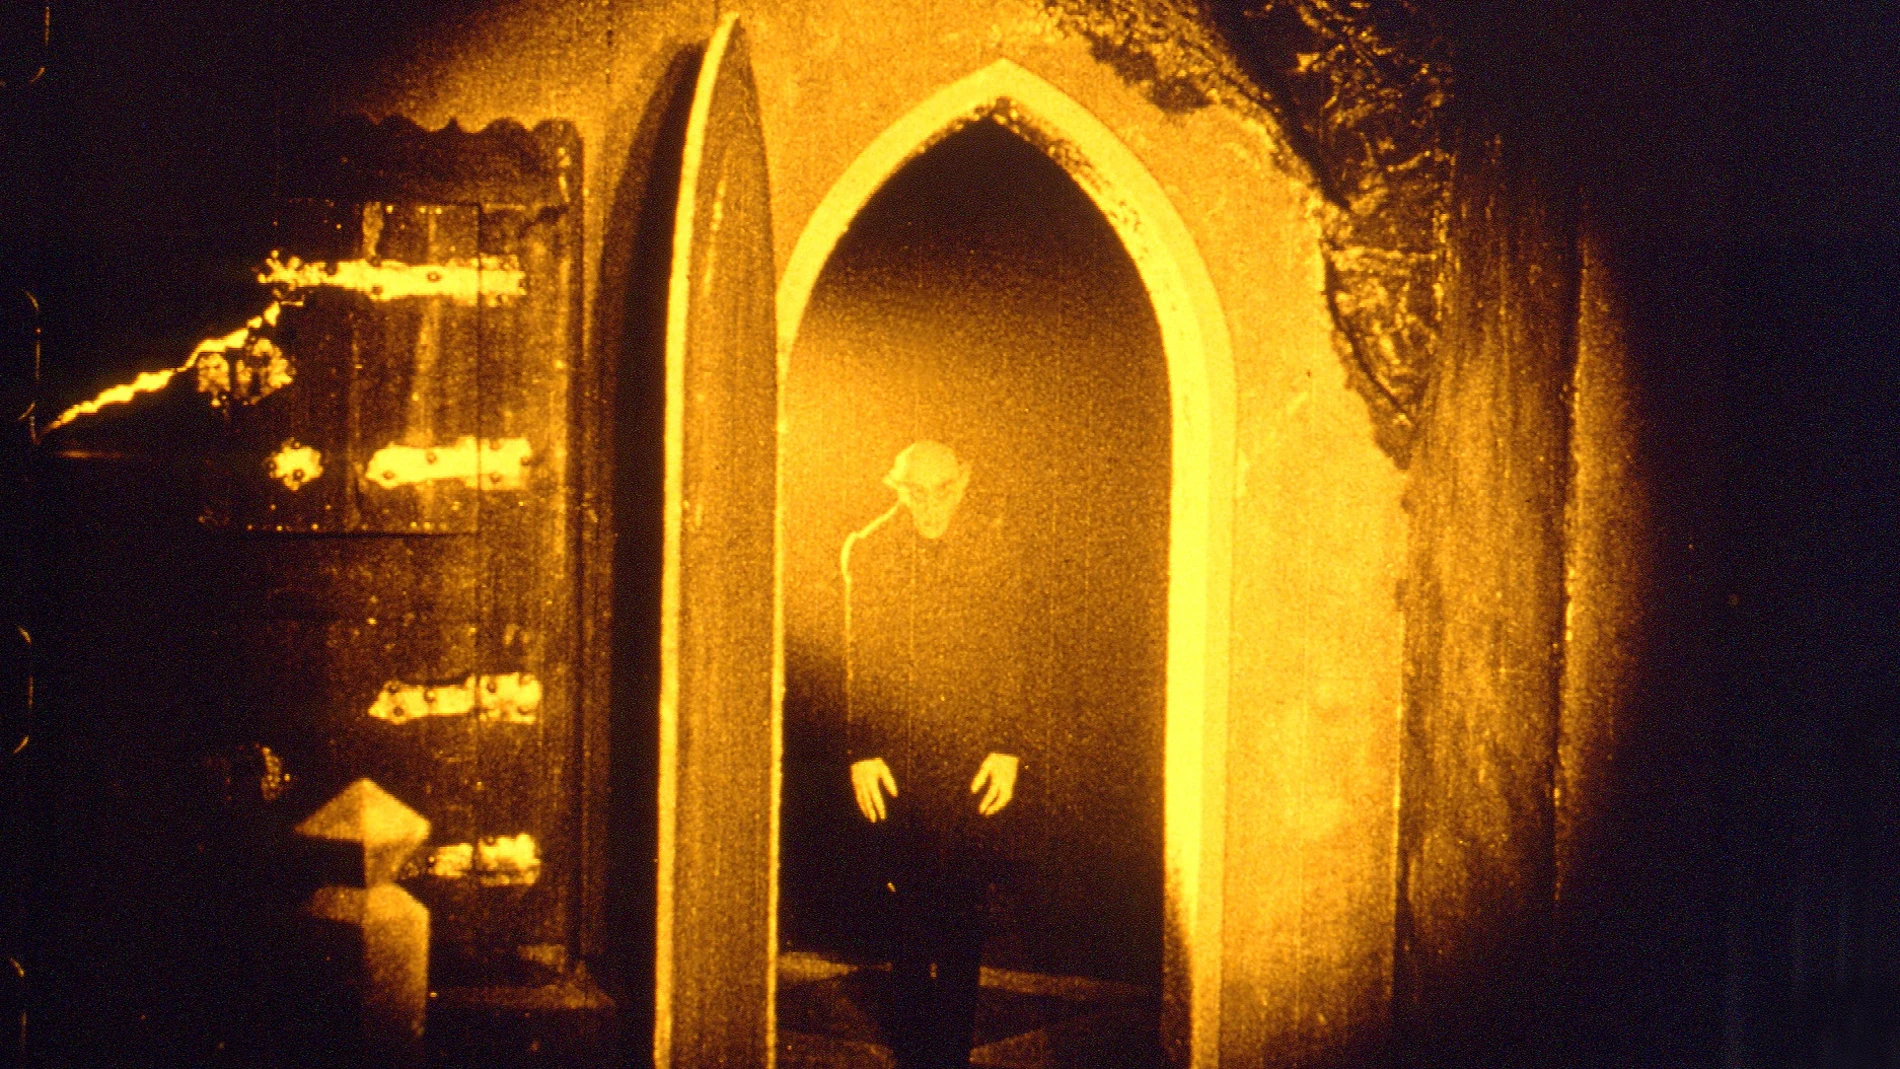 El “Nosferatu” de Murnau que protagonizará la exposición dedicada a los vampiros